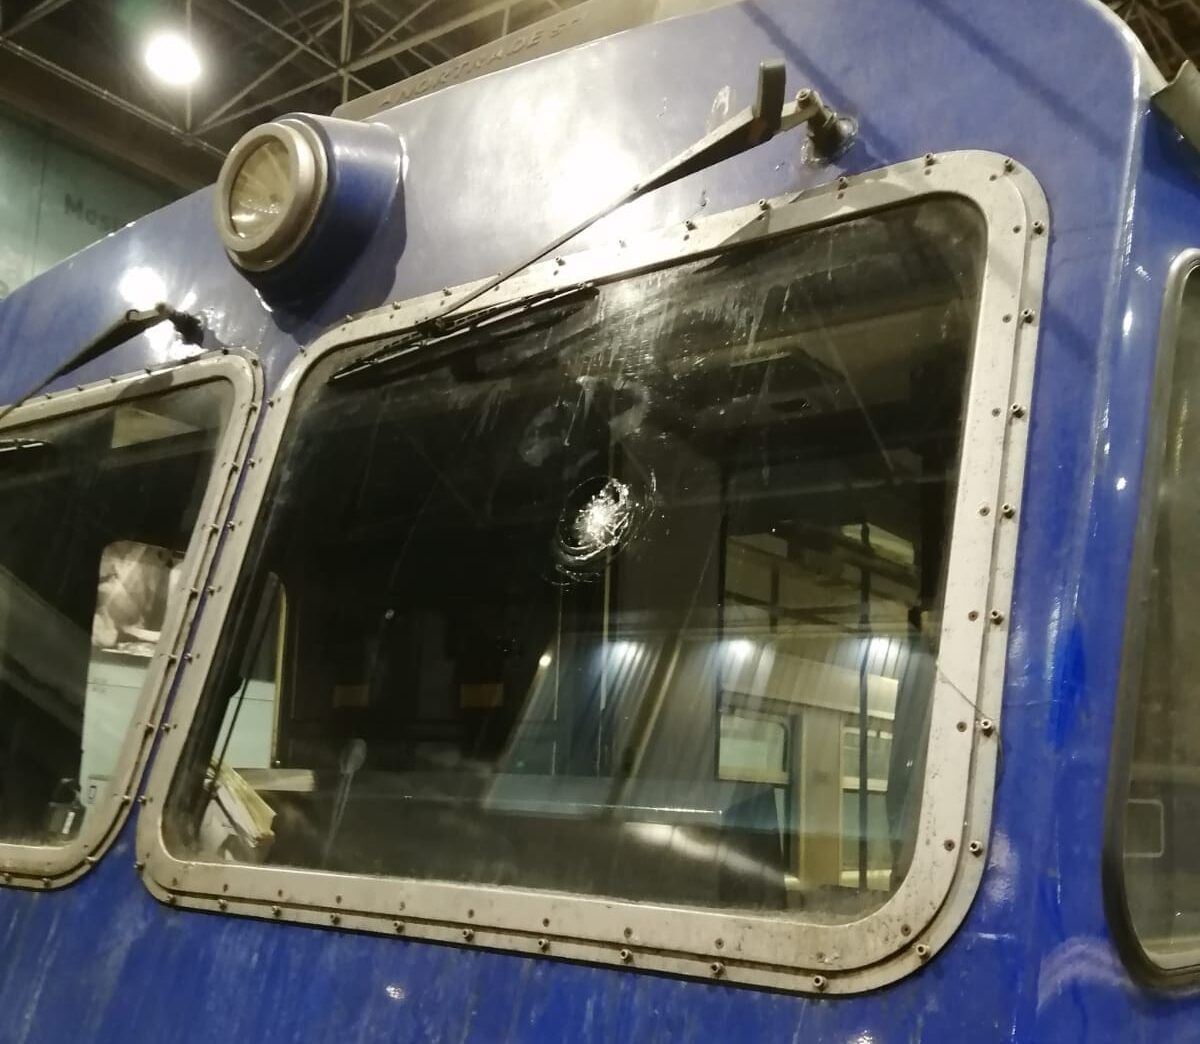 POZZUOLI/ Sasso lanciato contro treno in corsa: vetro sfondato e teppisti in fuga